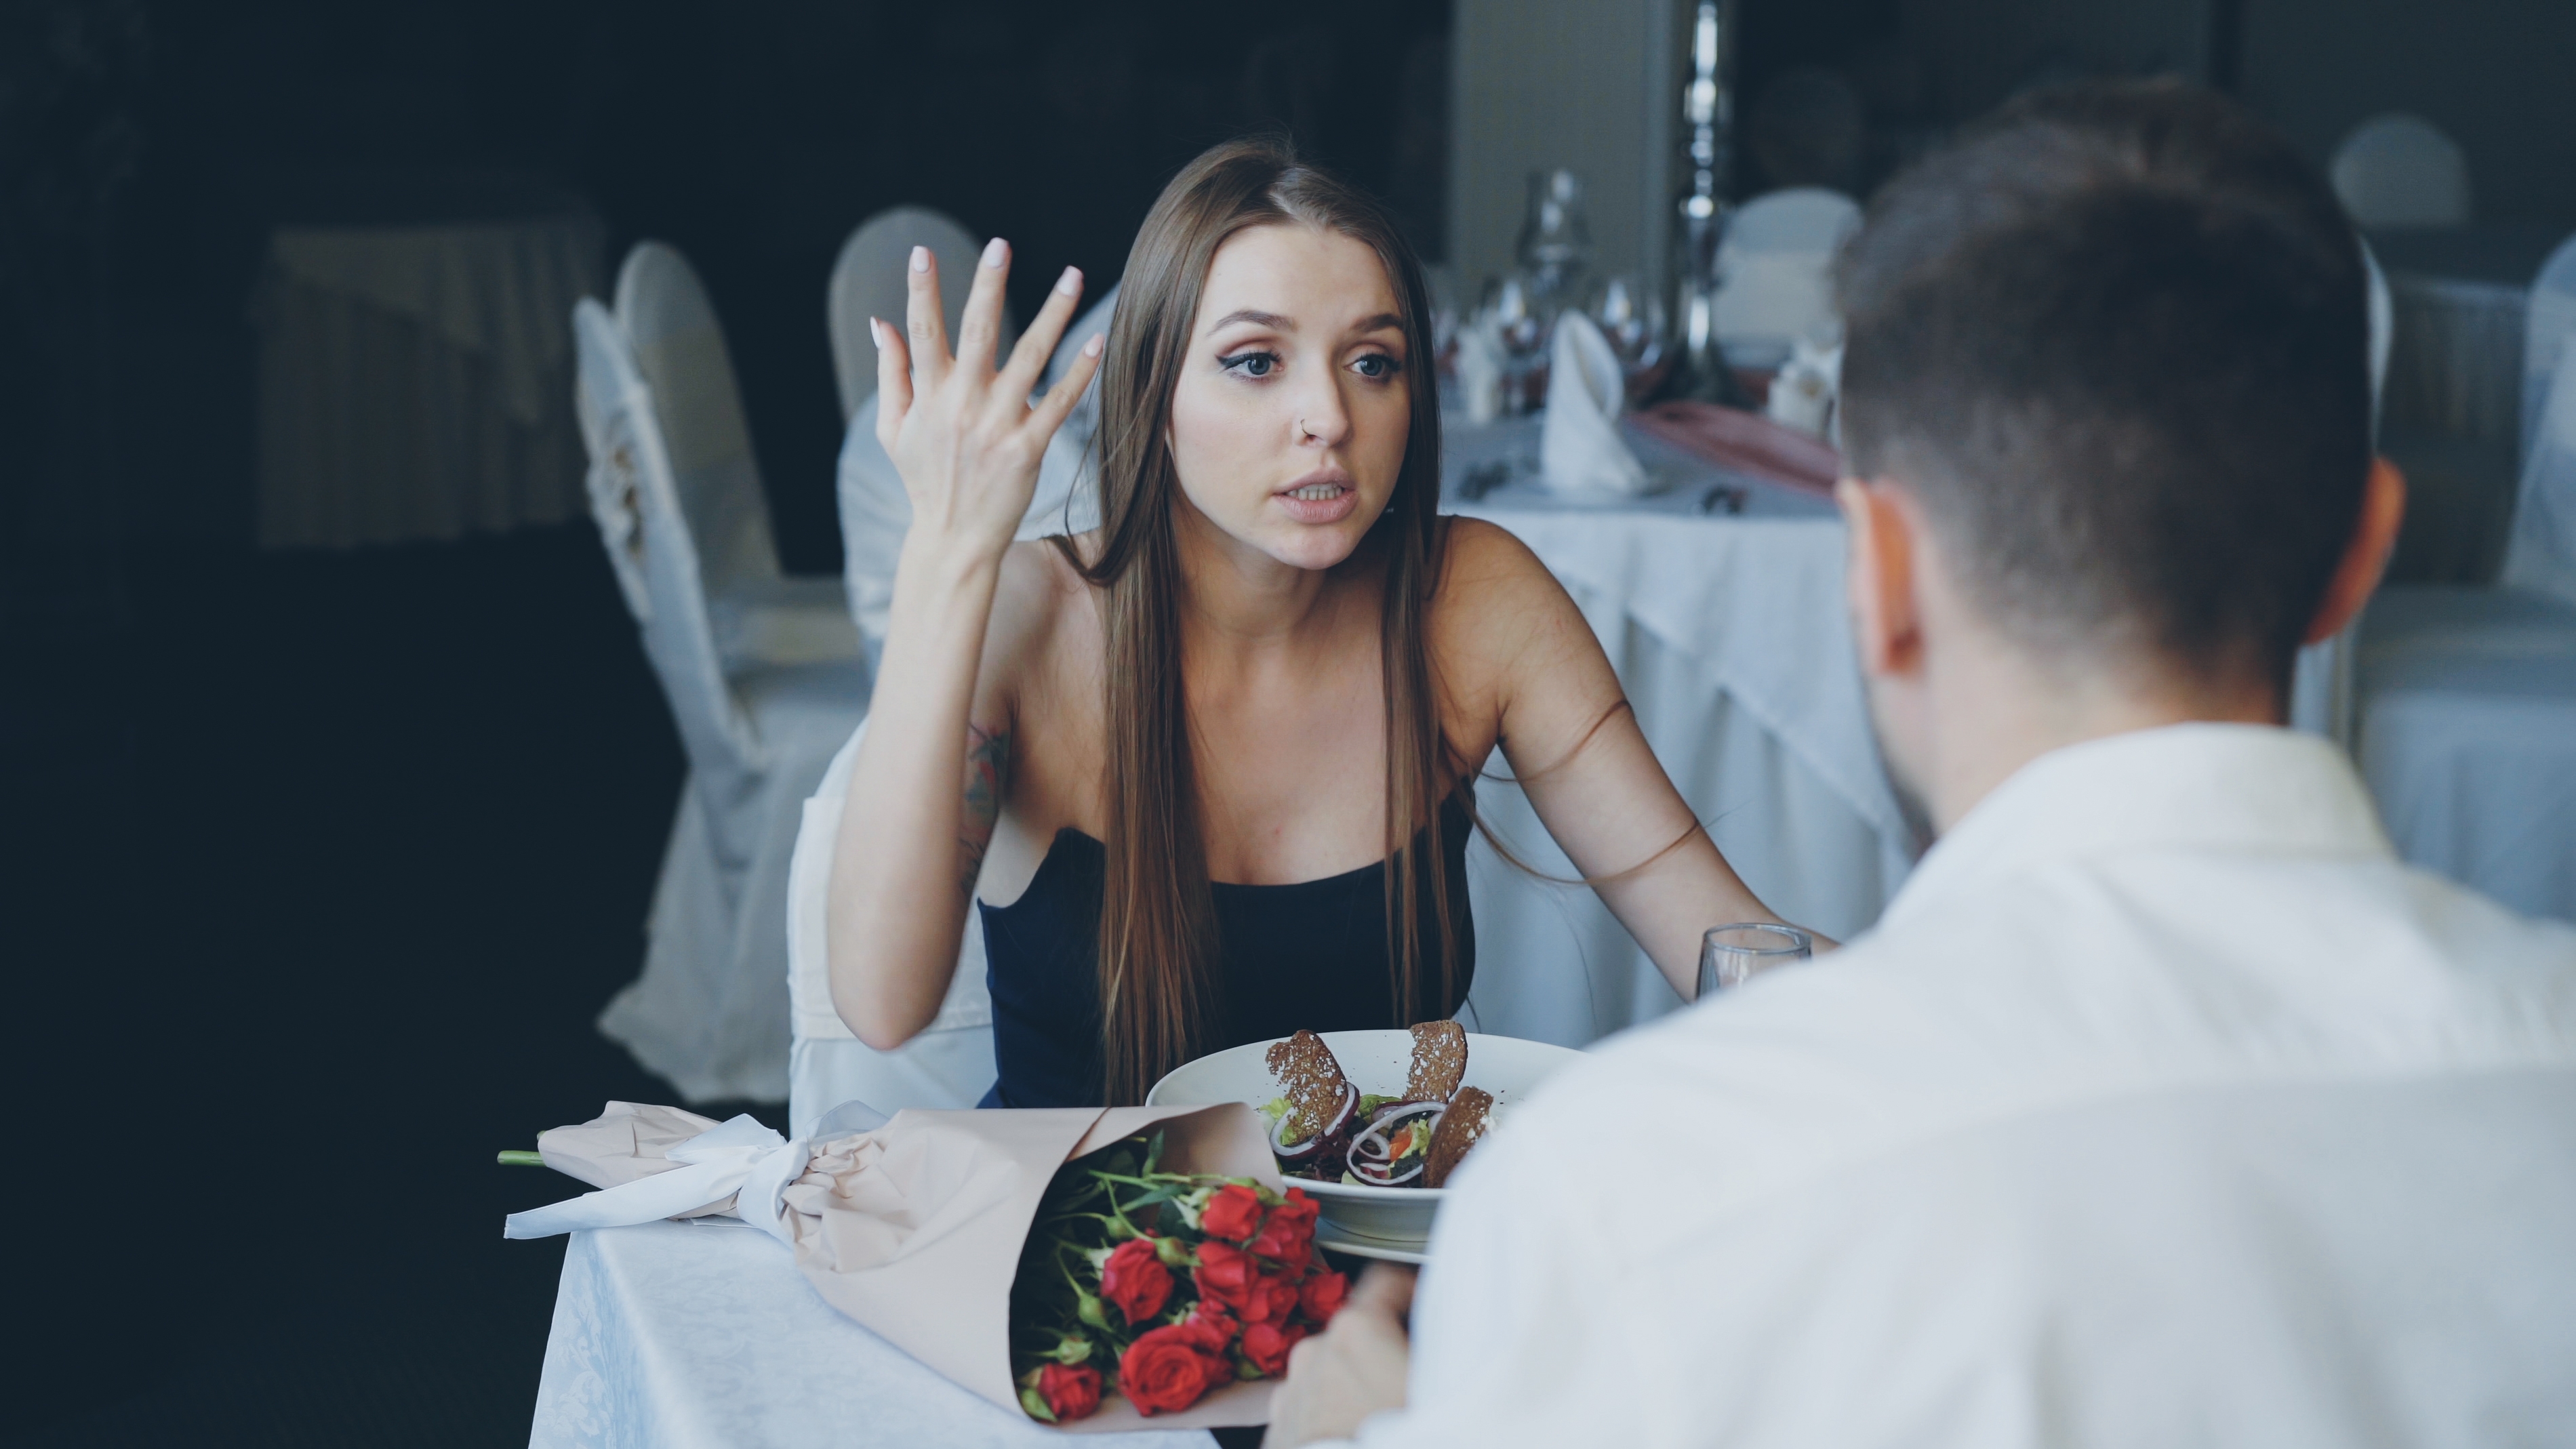 Une femme en colère se disputant avec son mari alors qu'elle dîne dans un restaurant | Source : Shutterstock